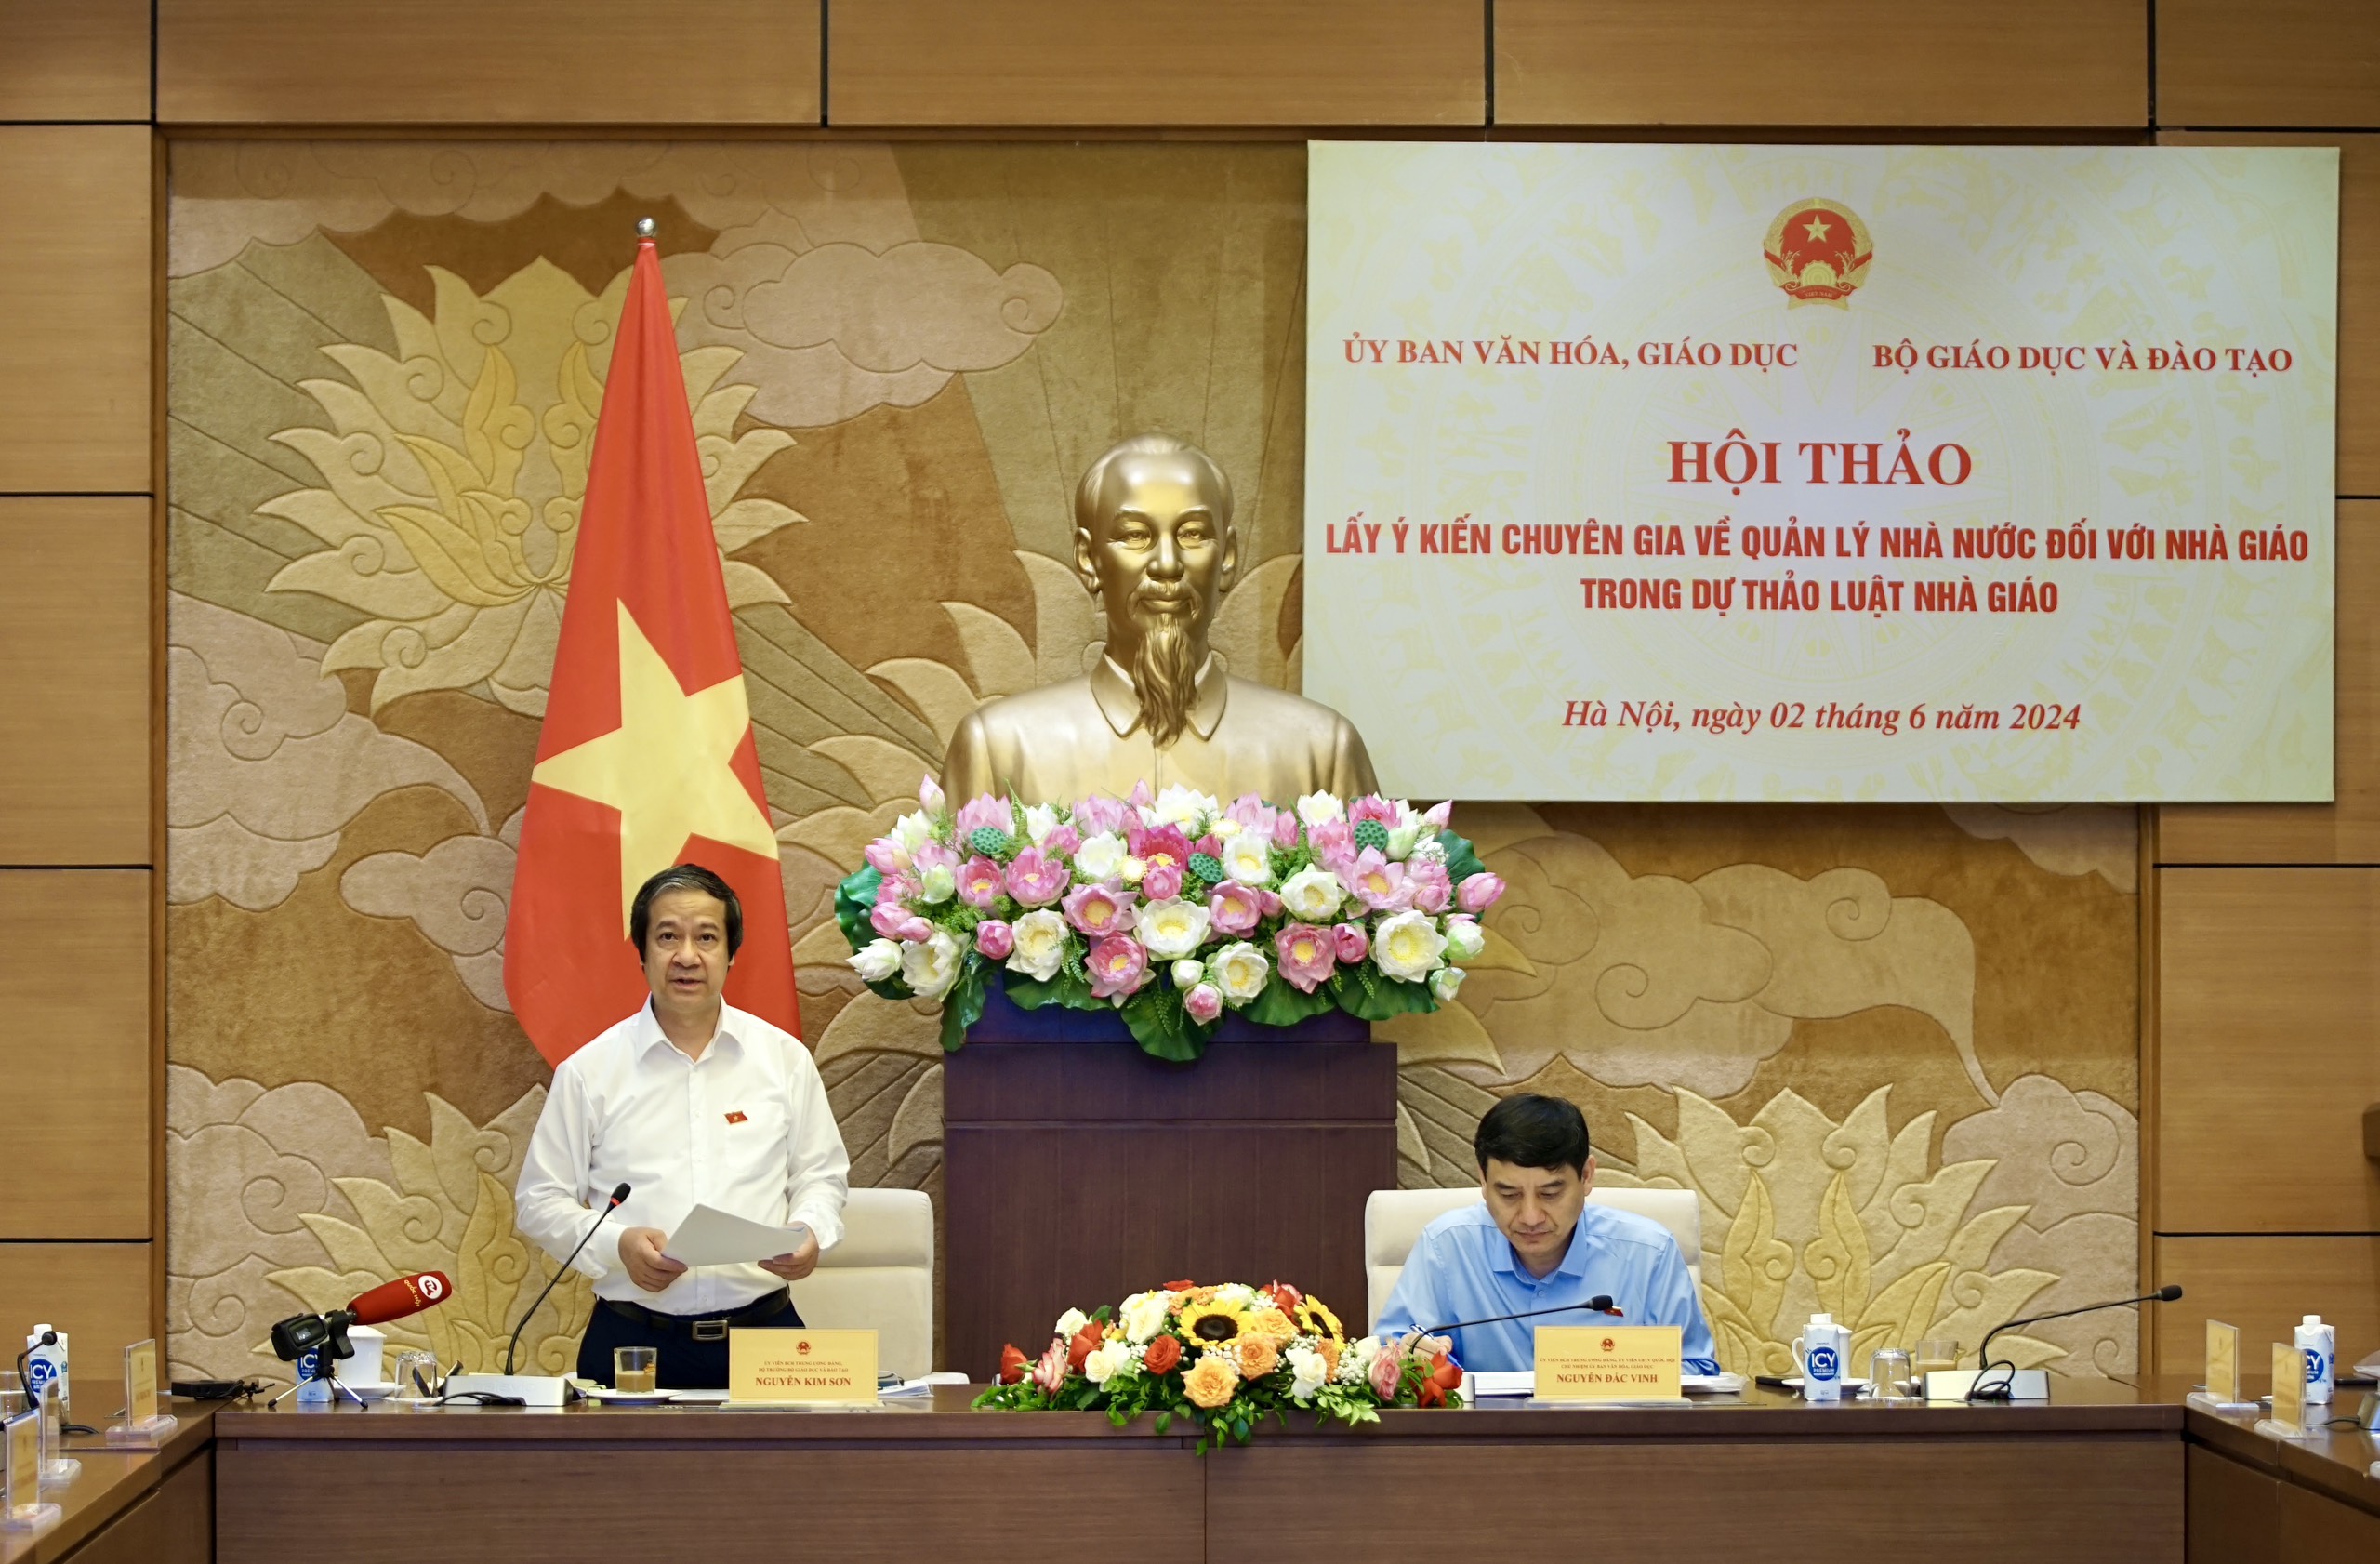 Chủ nhiệm Ủy ban Văn hóa Giáo dục của Quốc hội Nguyễn Đắc Vinh, Bộ trưởng Bộ GD&ĐT Nguyễn Kim Sơn chủ trì hội thảo.